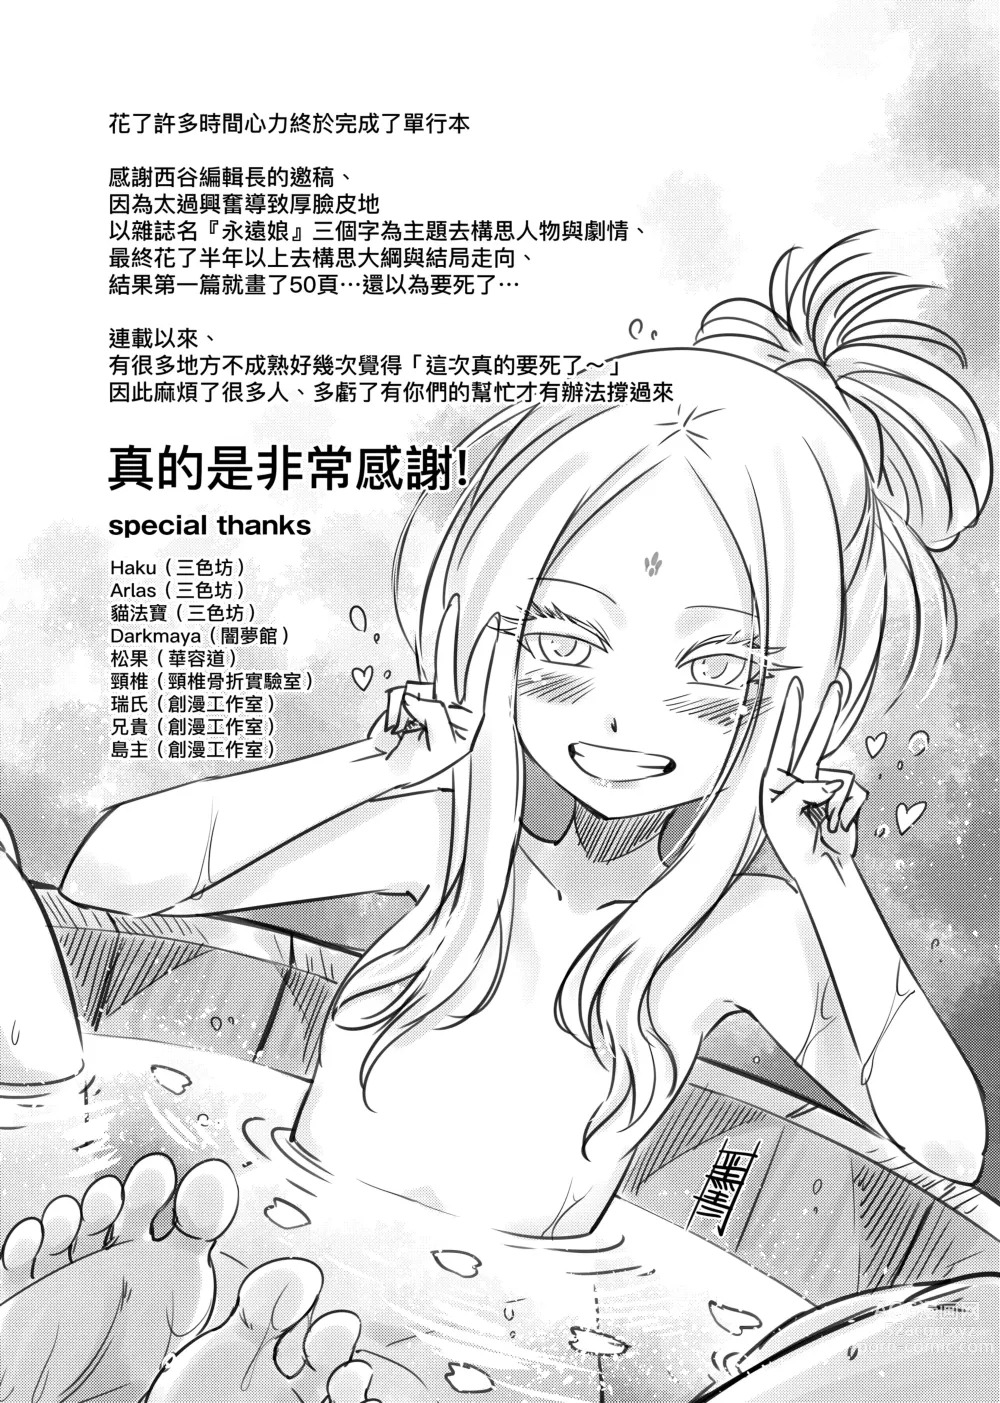 Page 212 of manga 永世流轉 (decensored)